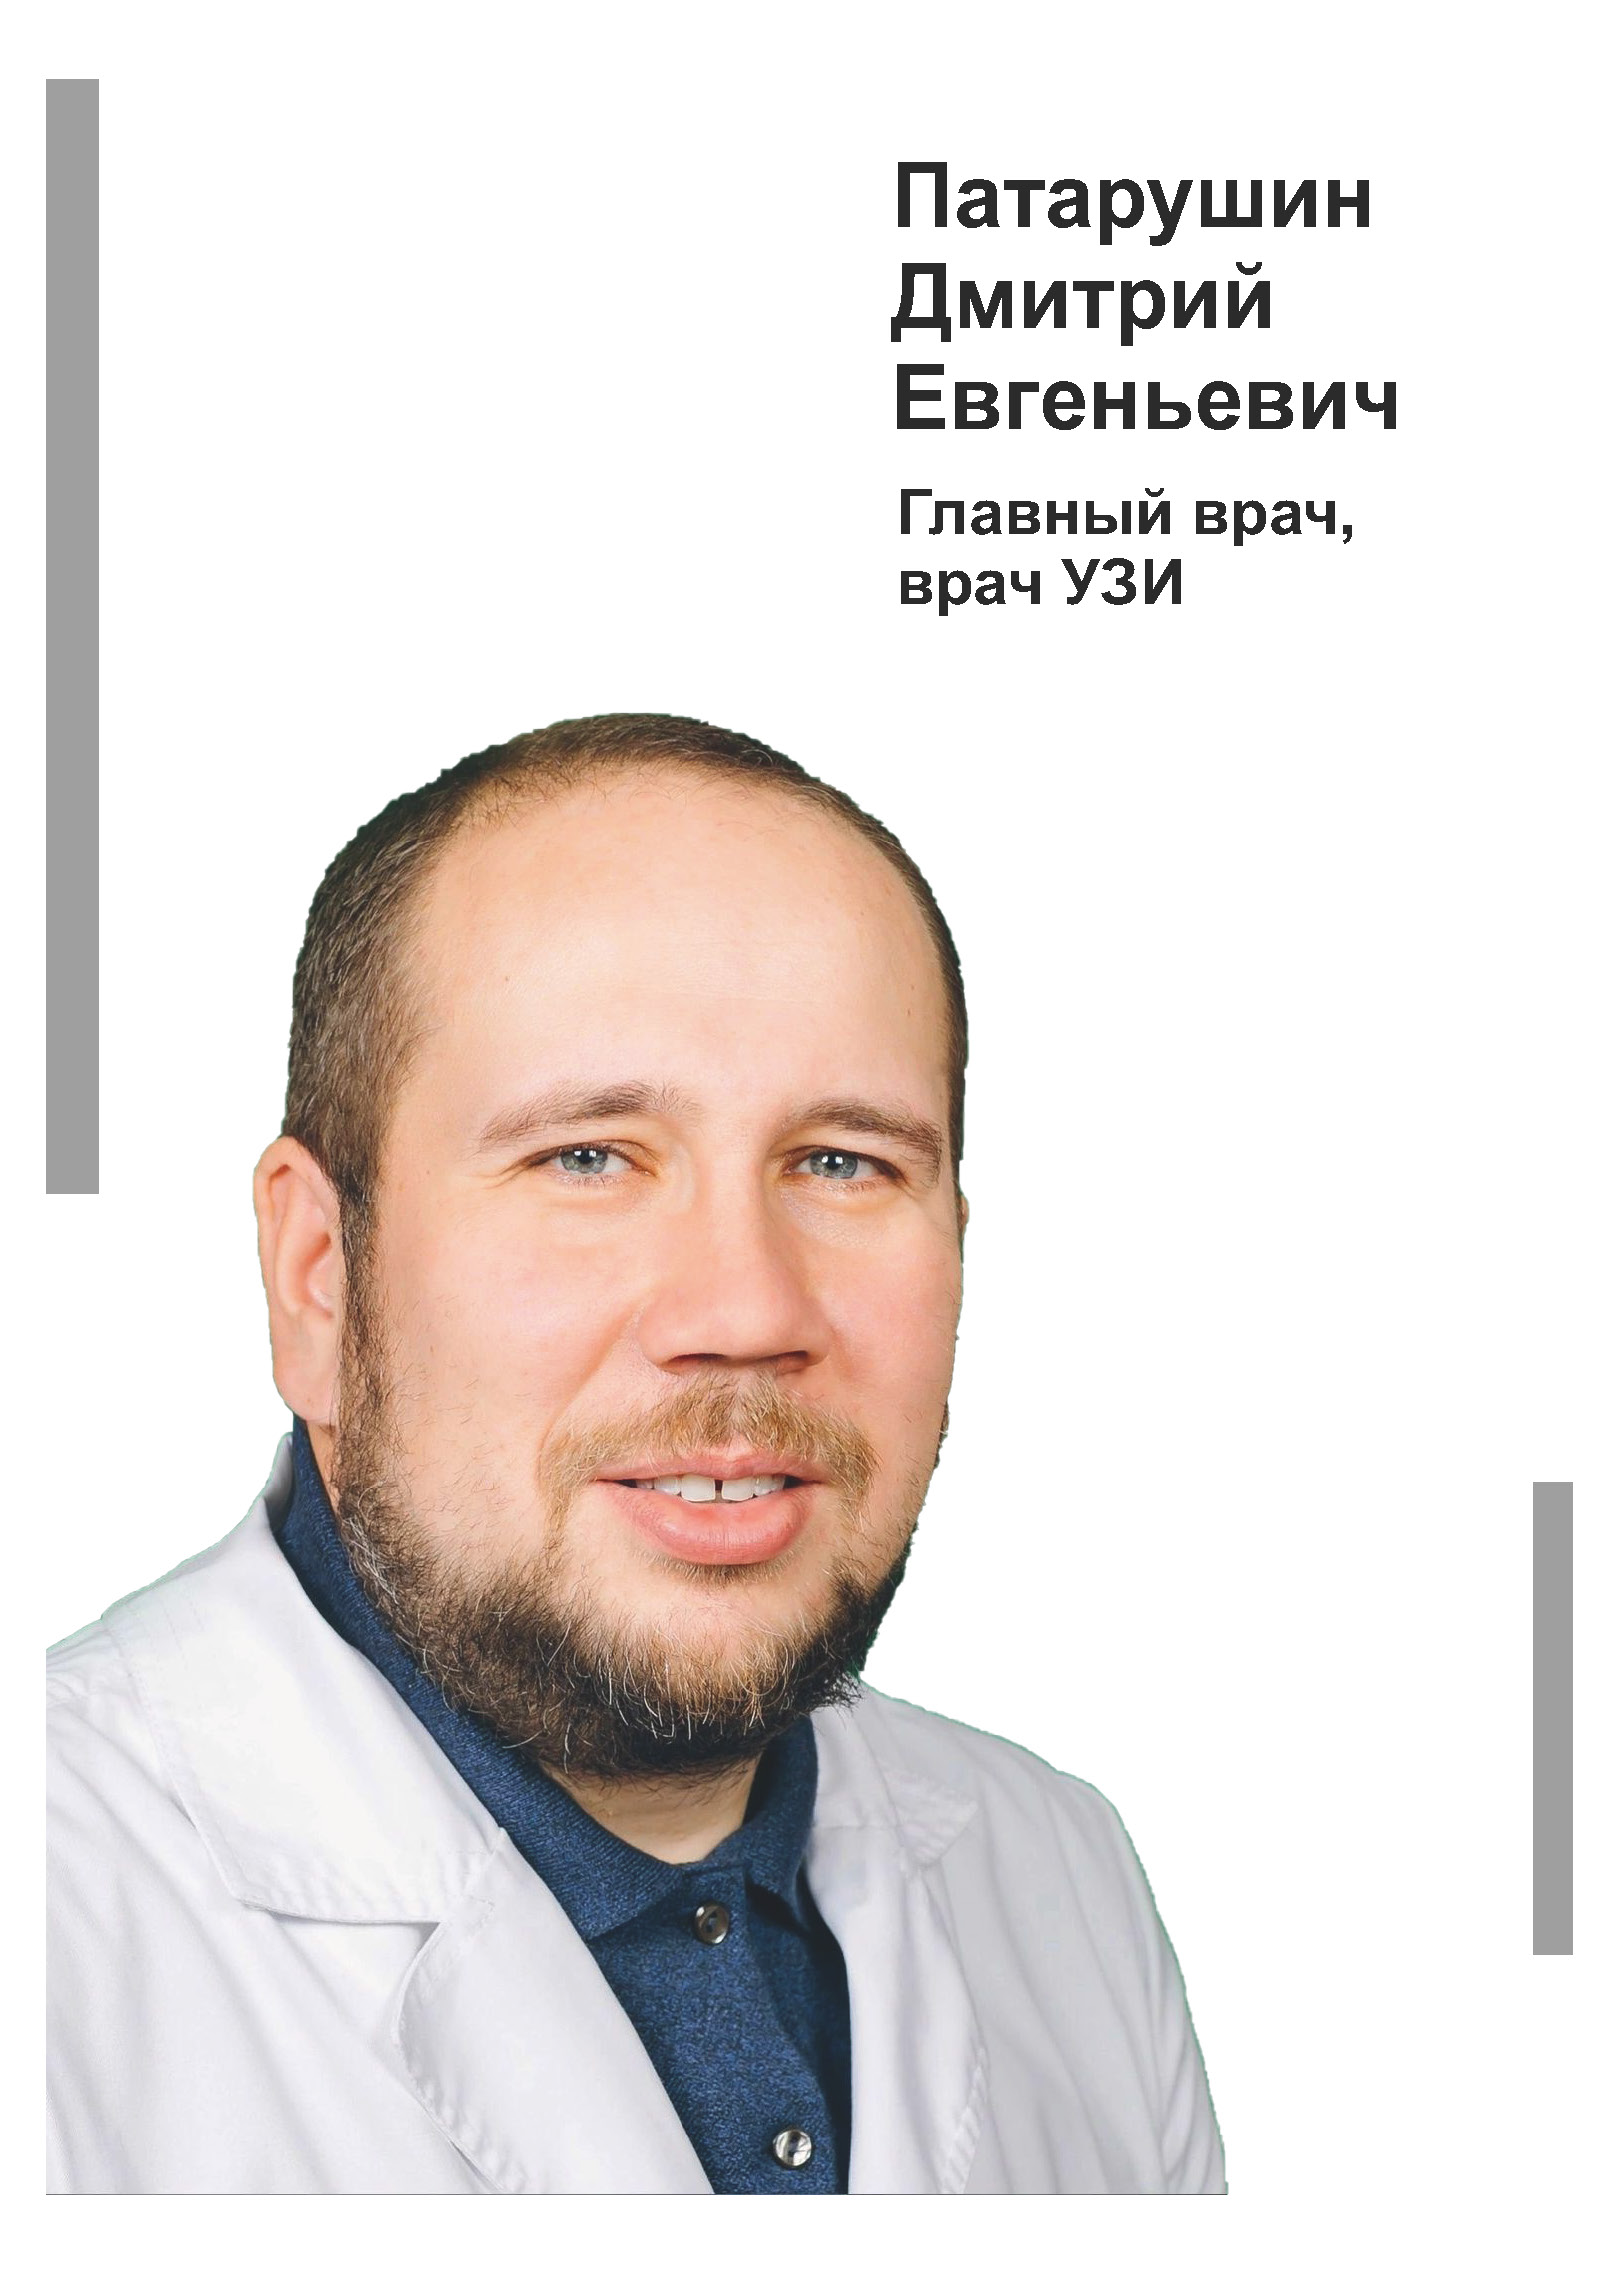 Патарушин Дмитрий Евгеньевич - Главный врач в клинике Lezaffe г. Югорск